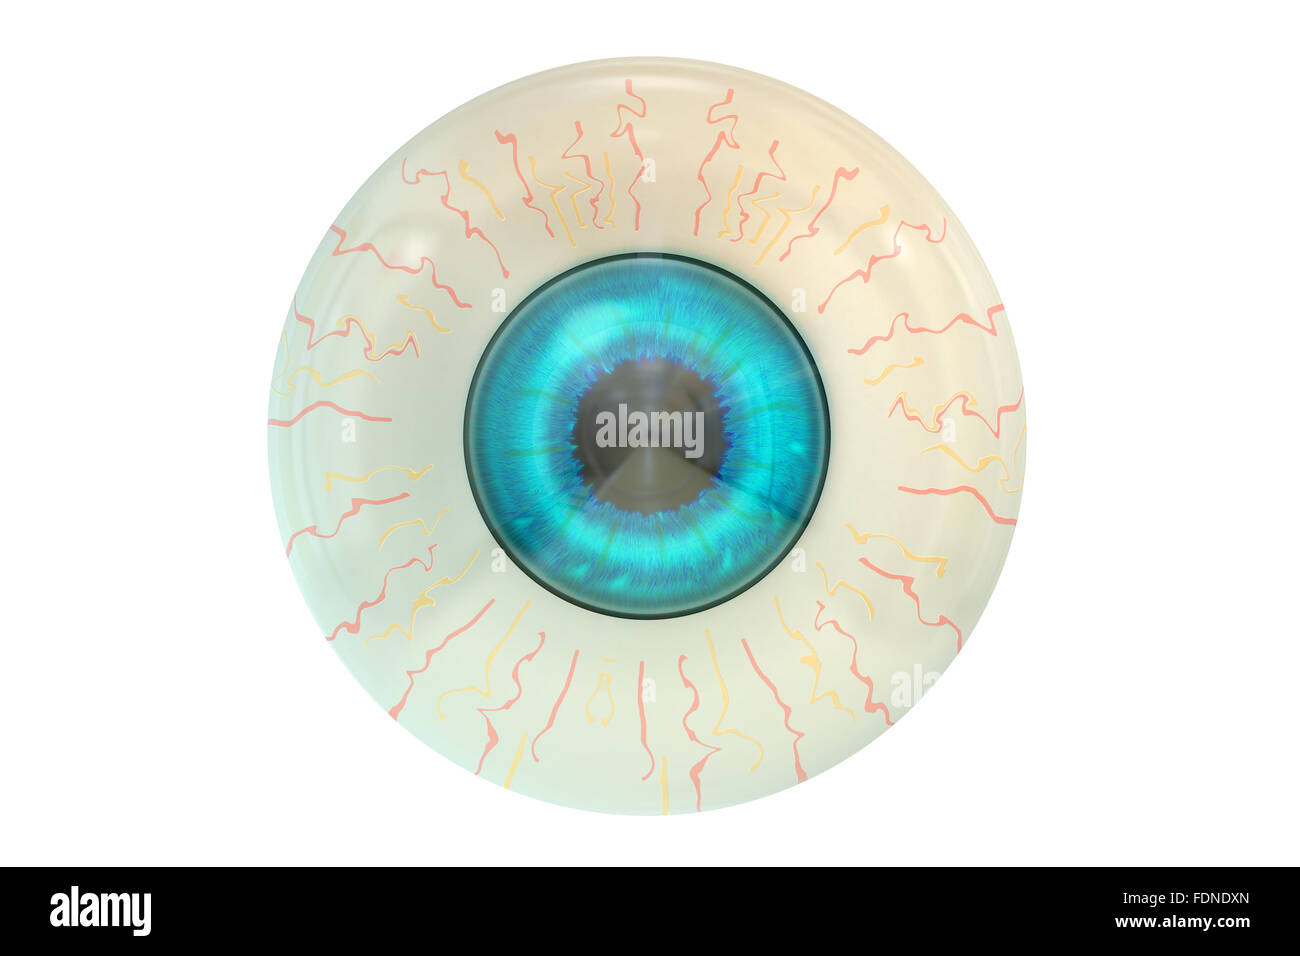 Human Eyeball isolated on white background Stock Photo